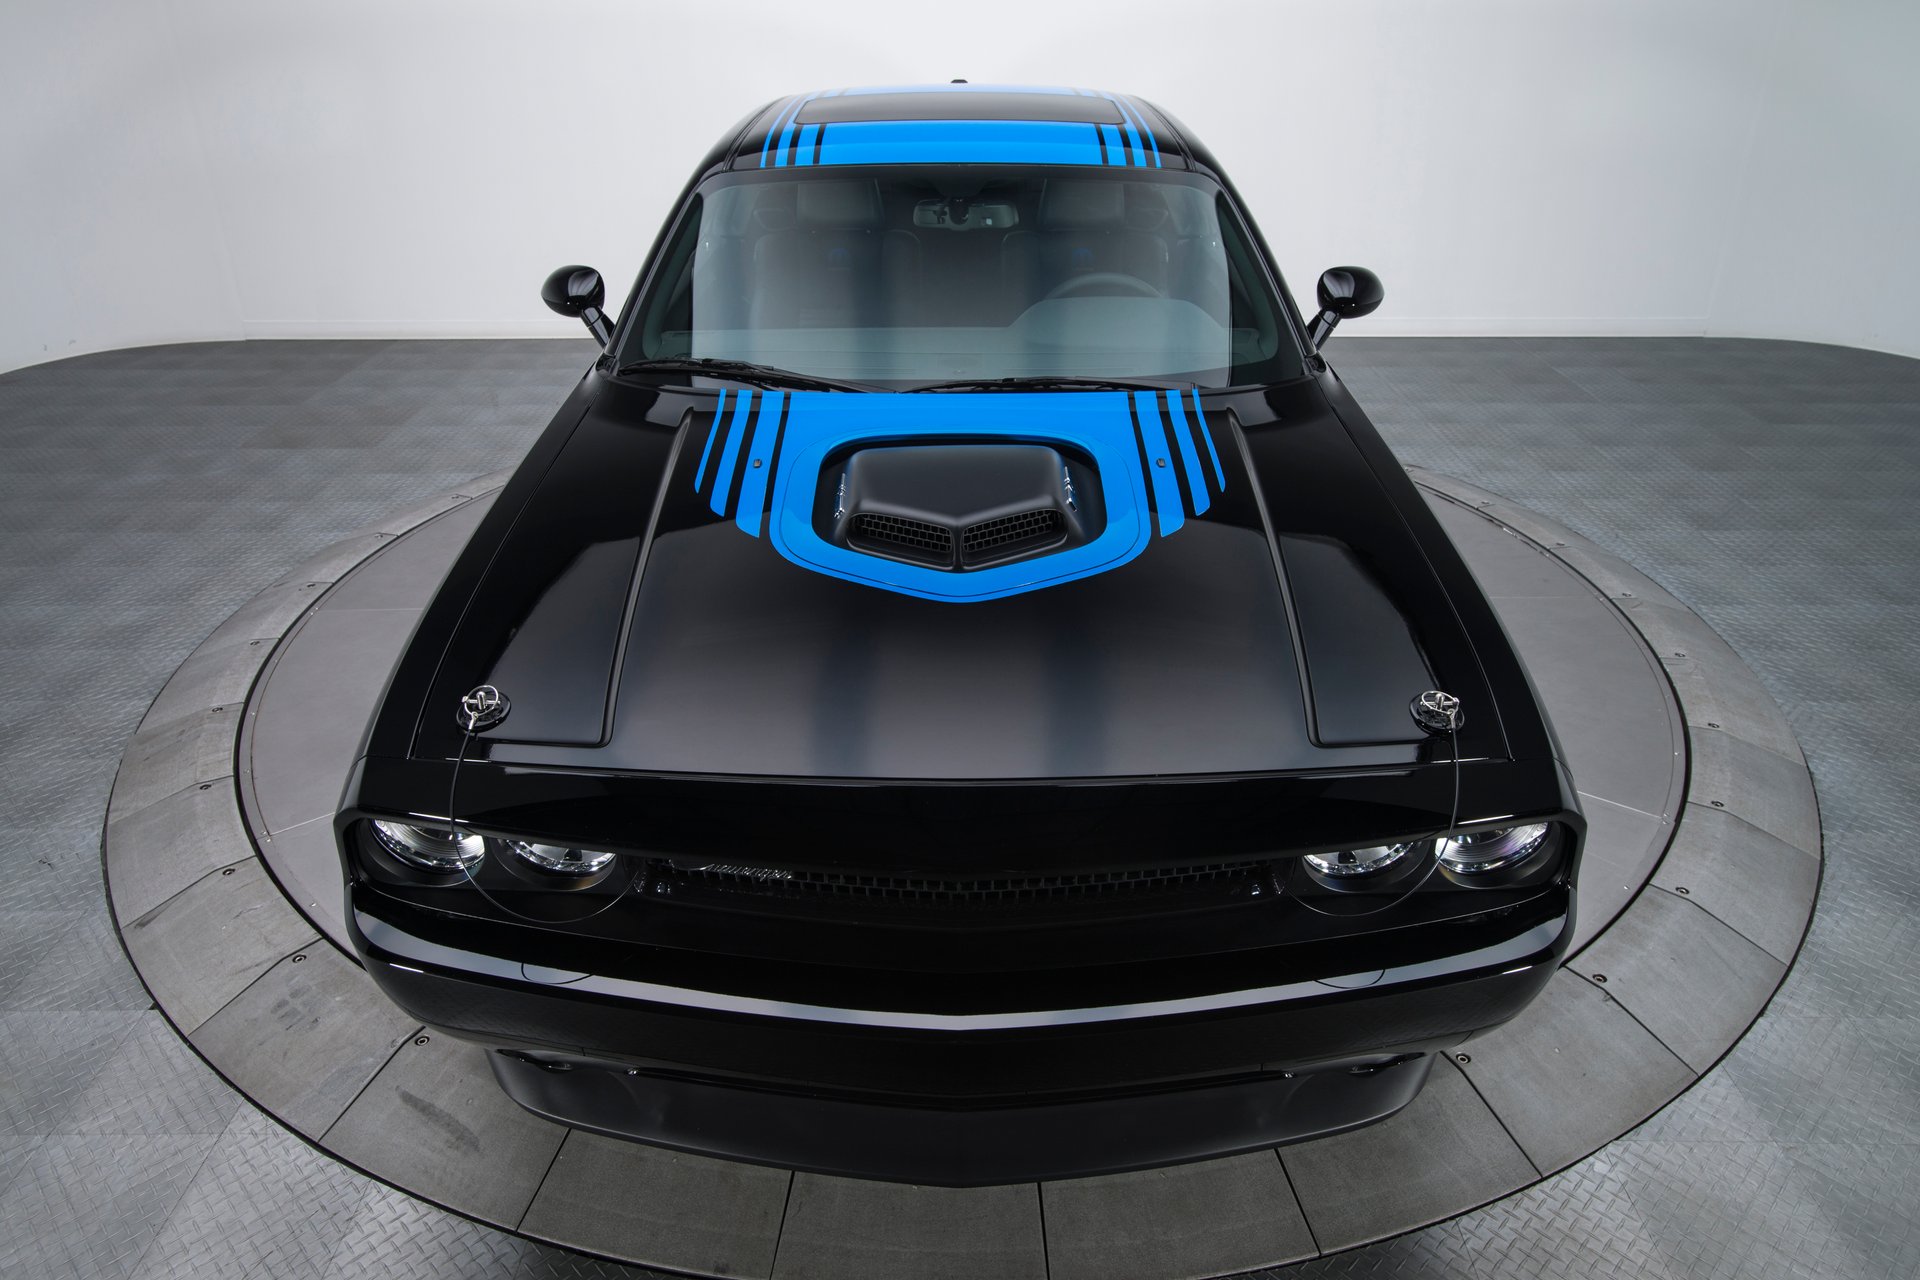 For Sale 2014 Dodge Challenger